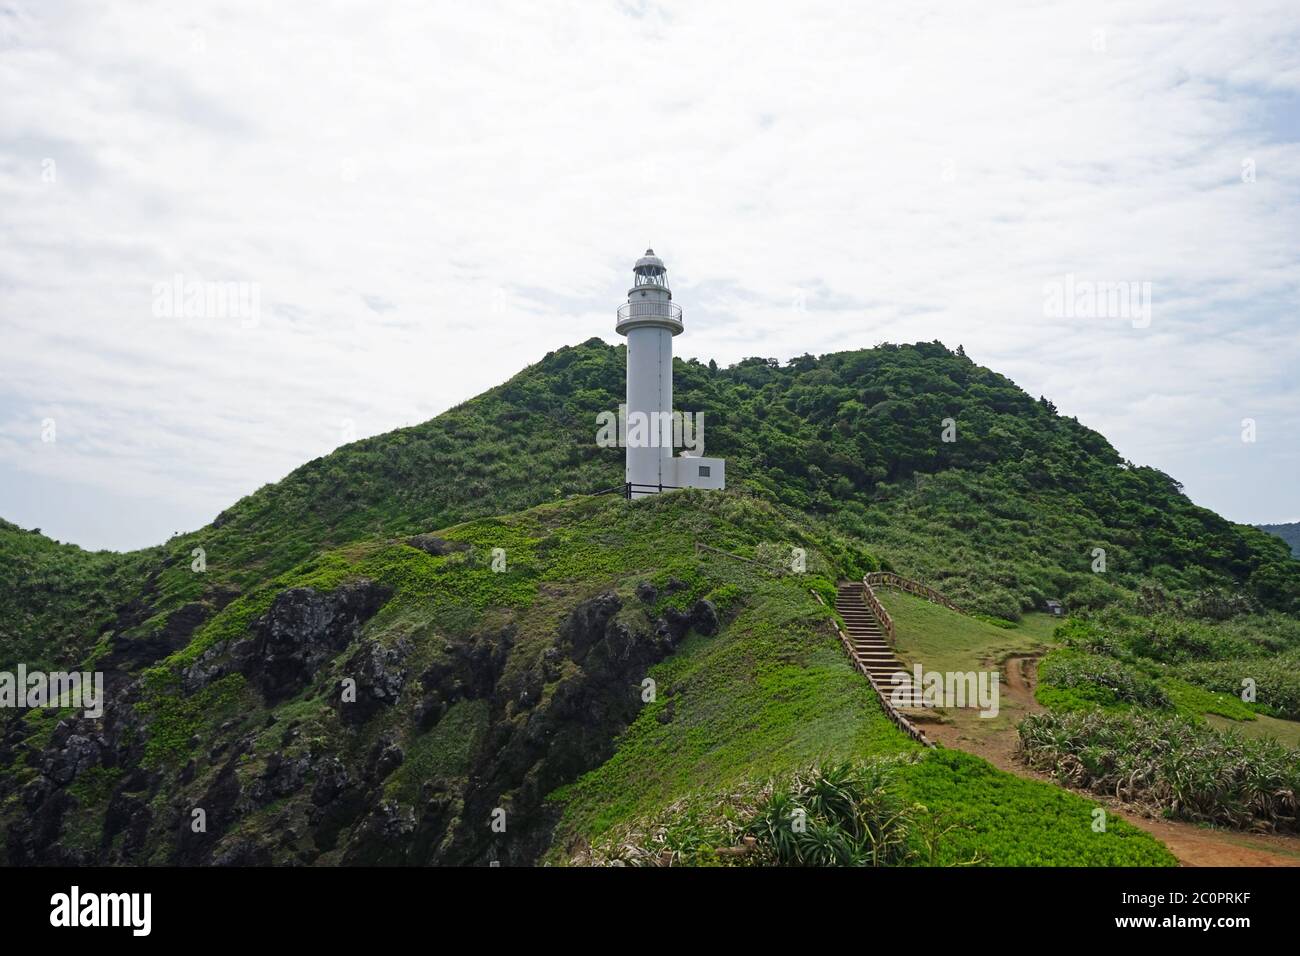 White lighthouse on the hill, Ishigaki Island, Okinawa Japan Stock Photo